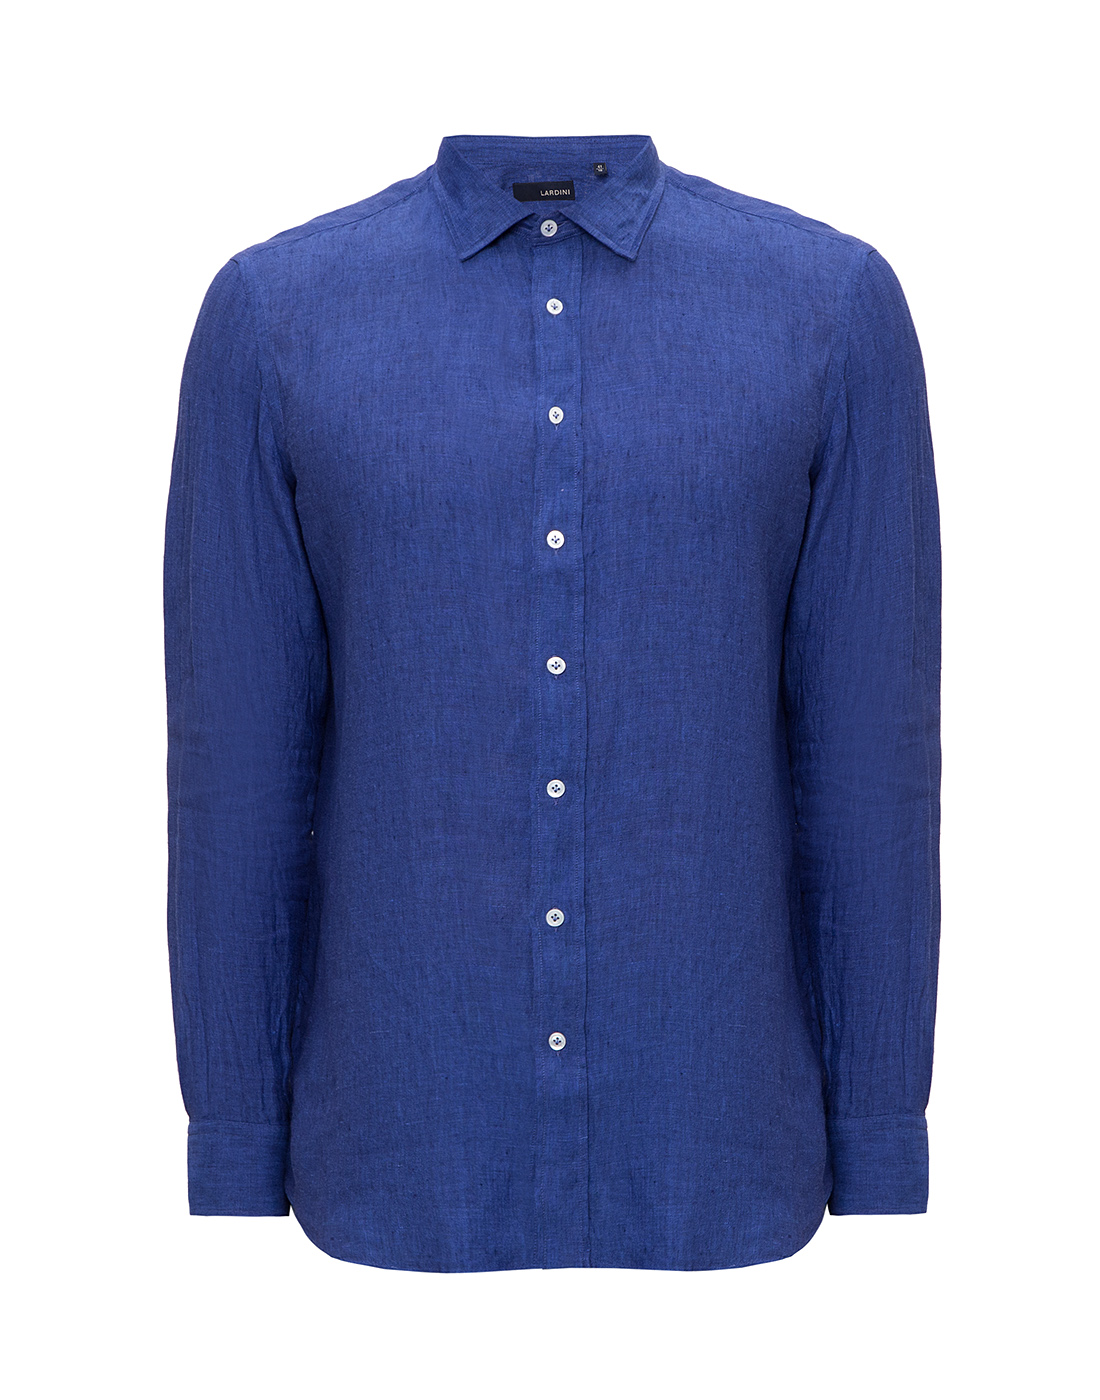 Мужская синяя льняная рубашка Lardini SEIDANTE CNC2014 830-1